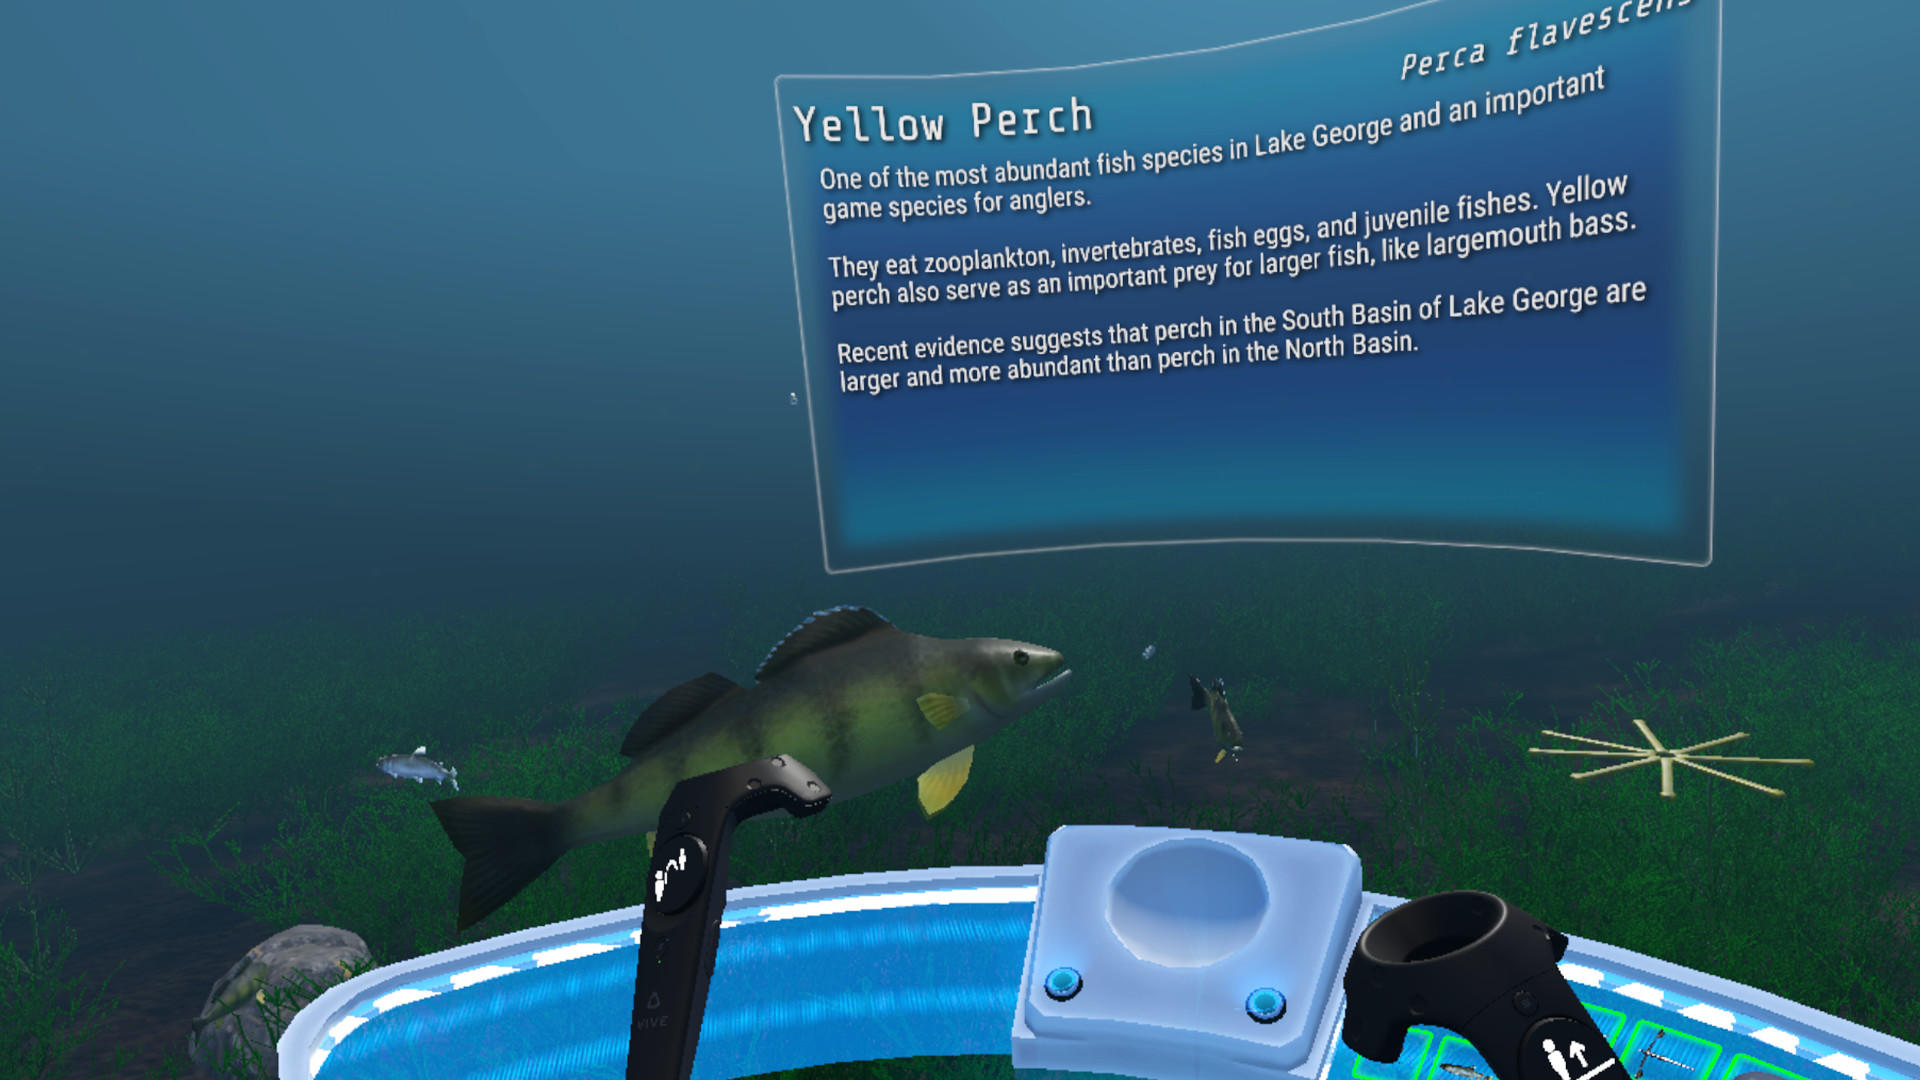 Screenshot of The Aquatic Messenger